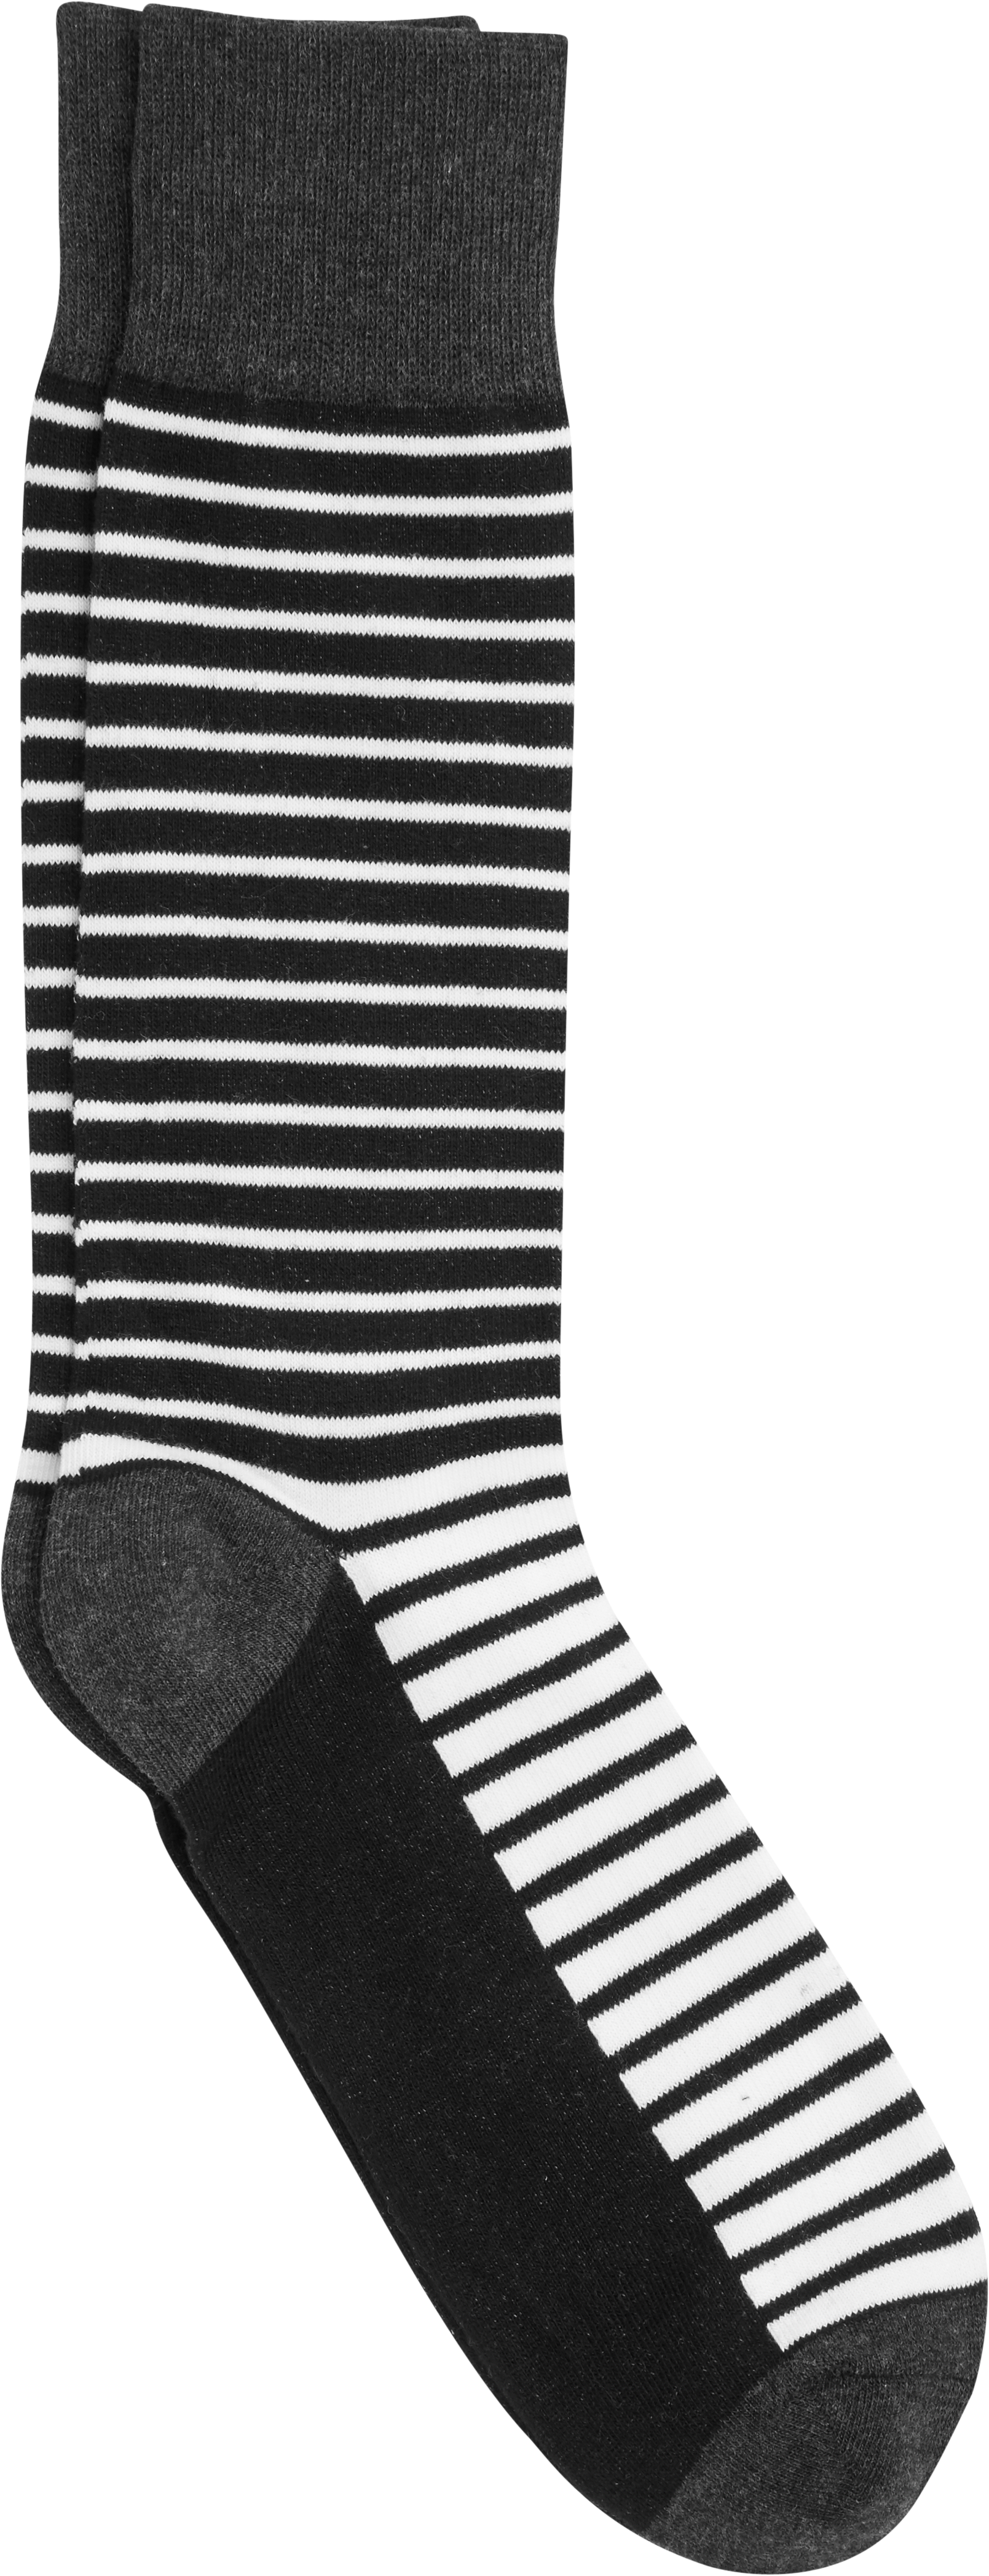 Egara Black & White Stripe Socks - Men's Sale | Men's Wearhouse